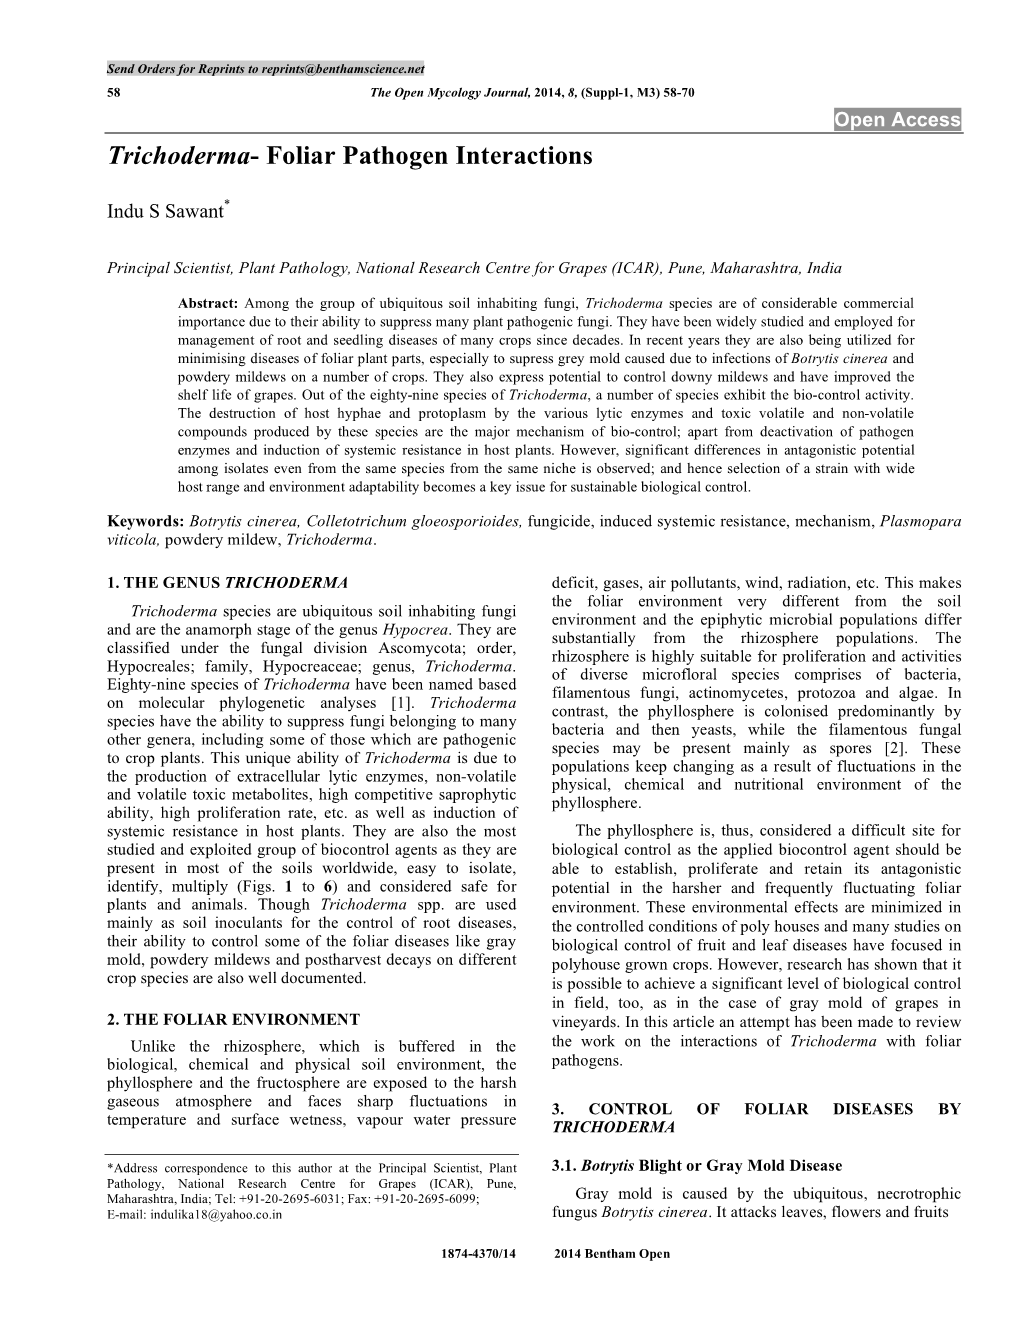 Trichoderma- Foliar Pathogen Interactions